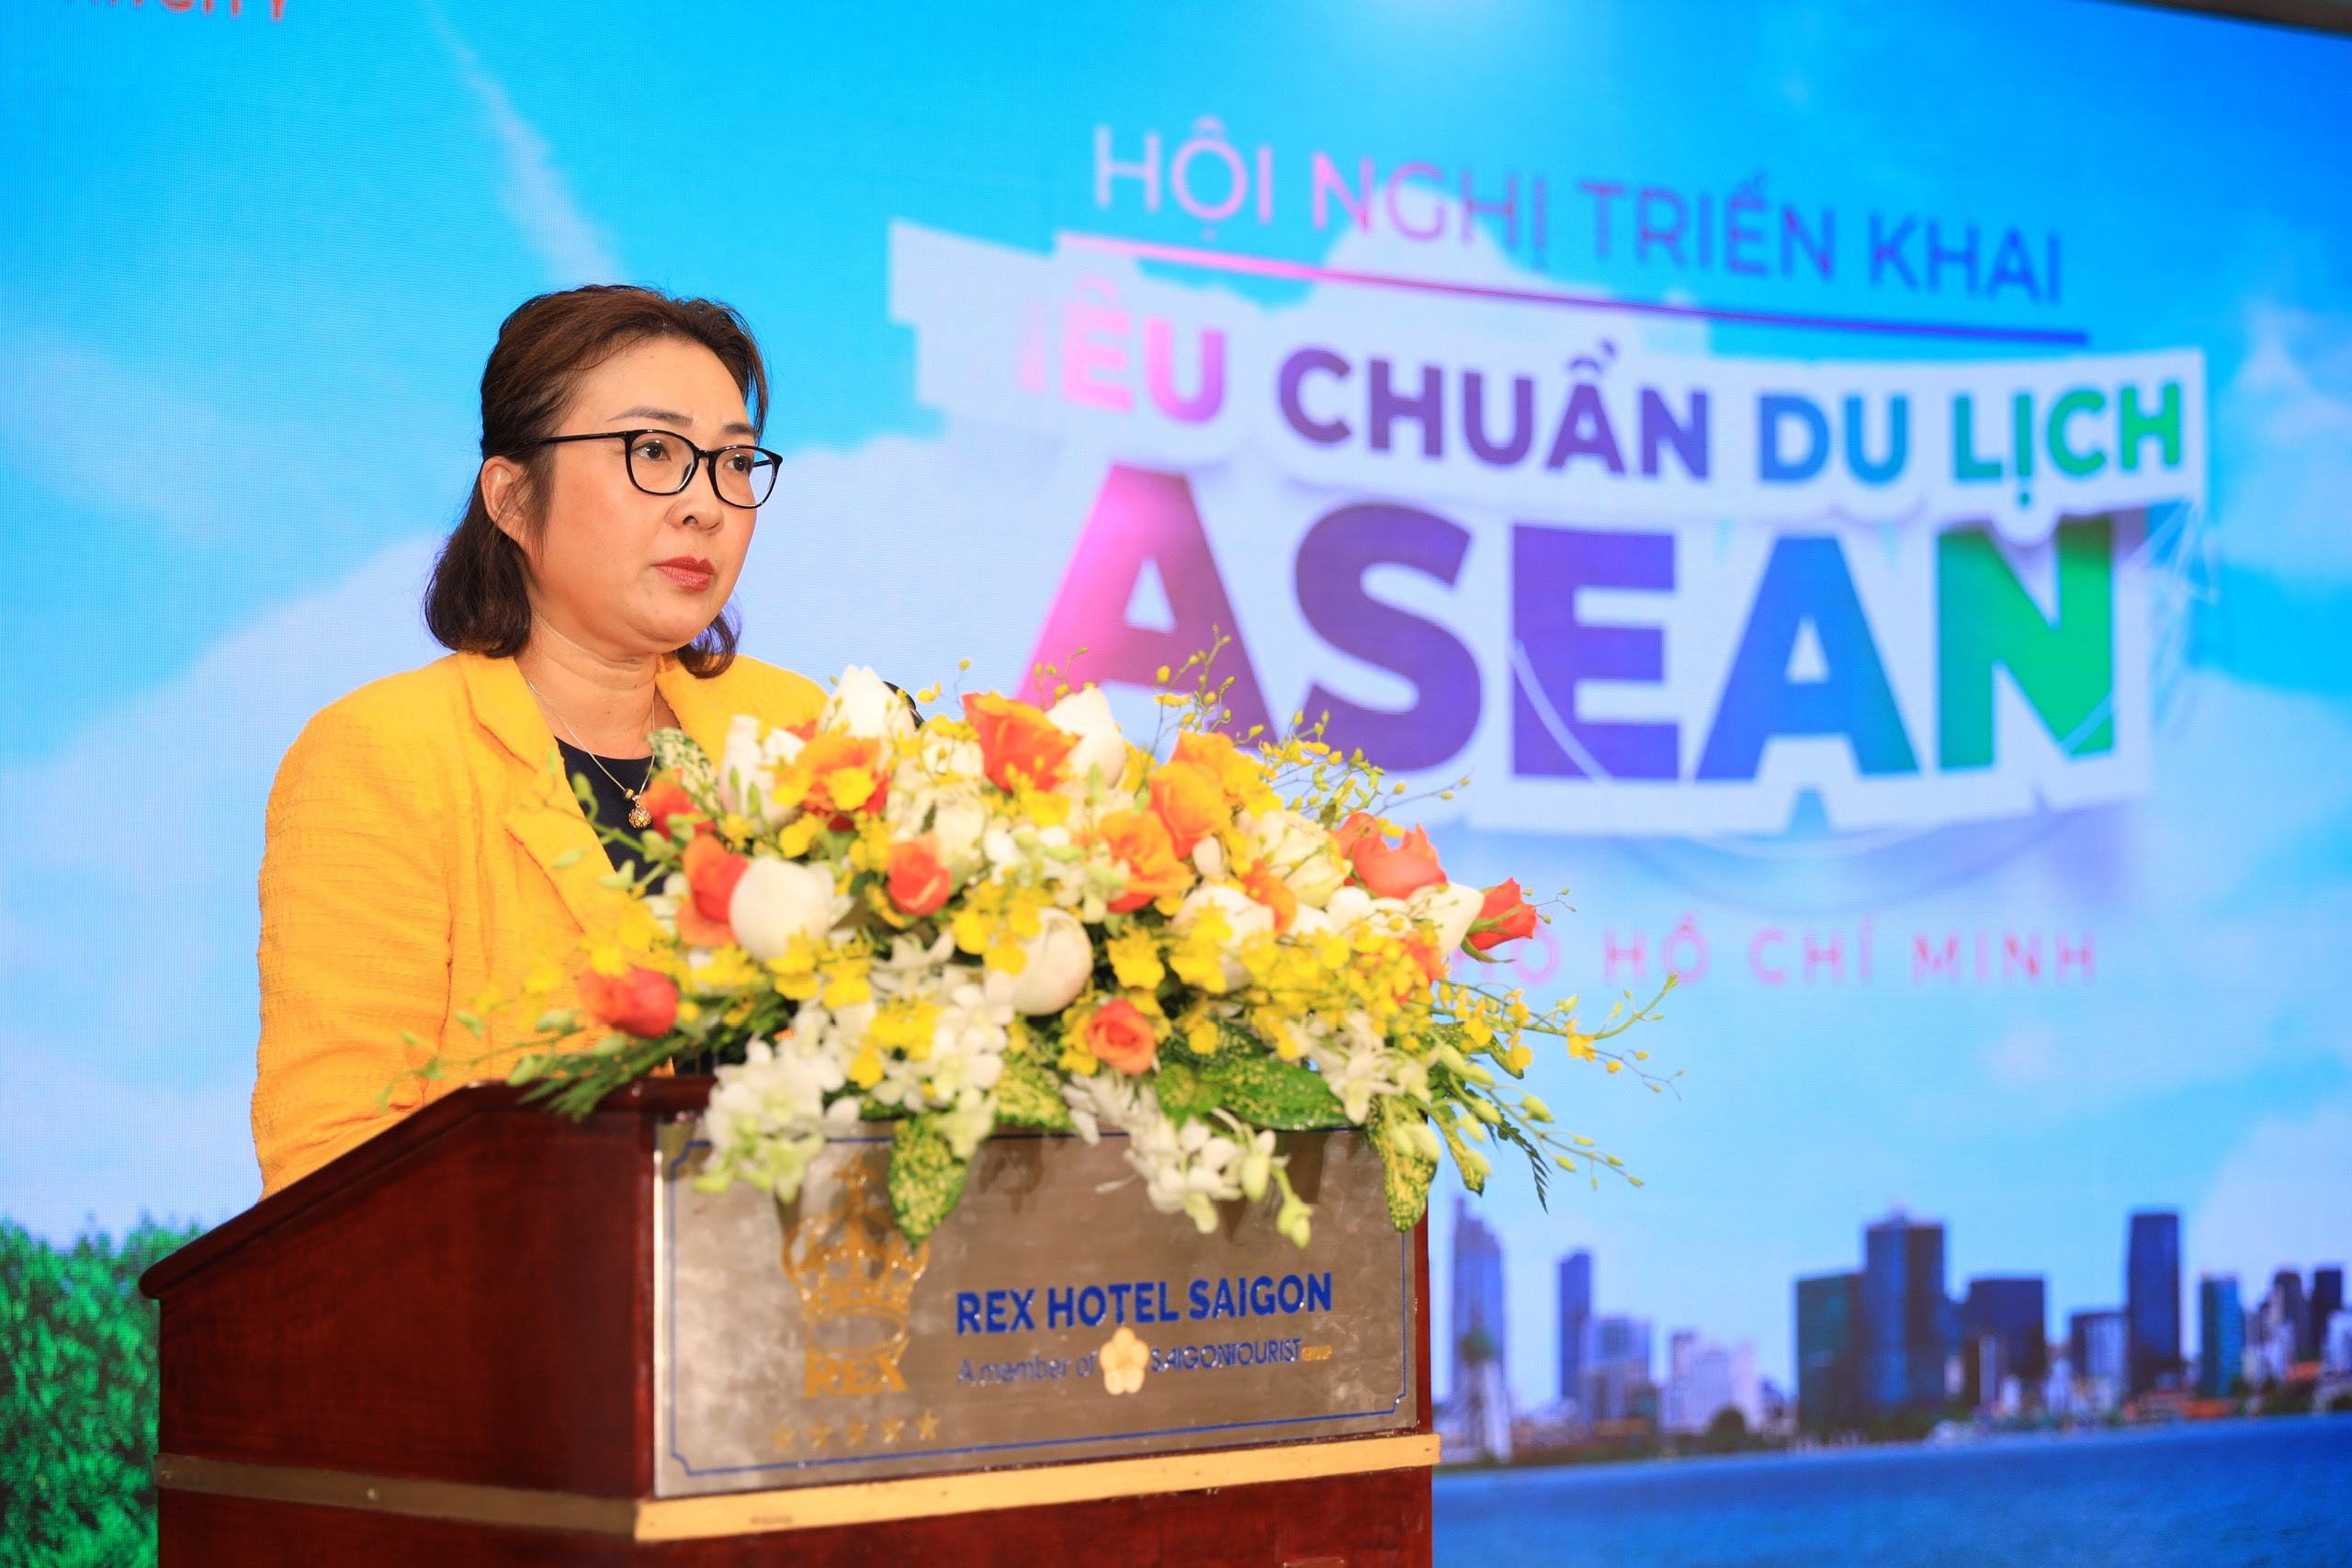 Nâng chất lượng điểm đến của TP.HCM theo chuẩn ASEAN - ảnh 2